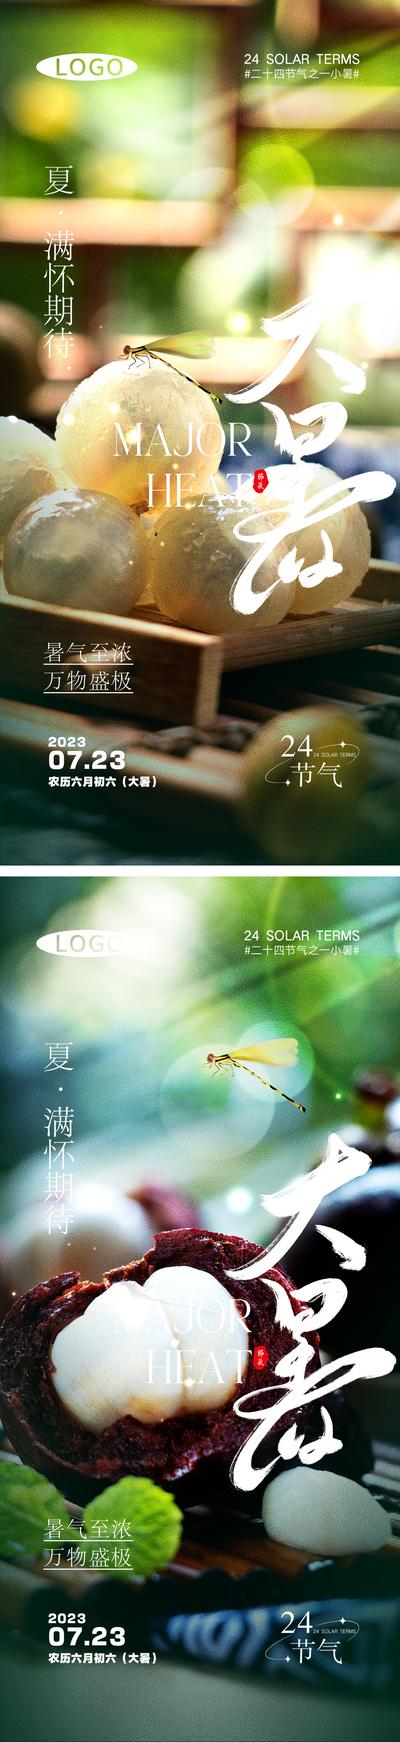 南门网 广告 海报 节气 大暑 水果 梨子 荔枝 系列